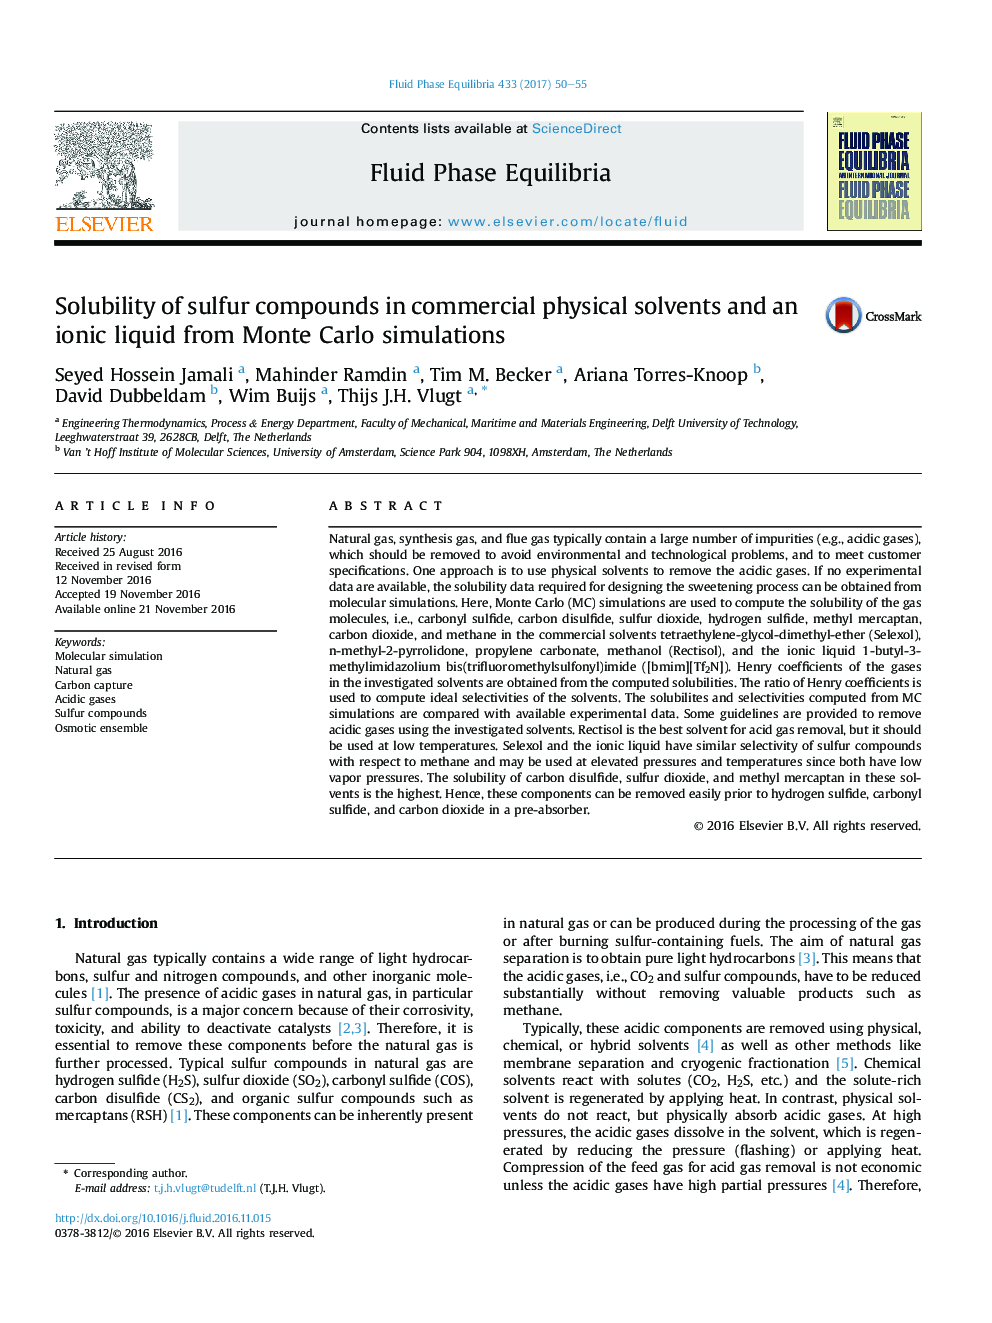 حلالیت ترکیبات گوگردی در حلال‌های فیزیکی تجاری و مایع یونی از شبیه‌سازی‌های مونته کارلو